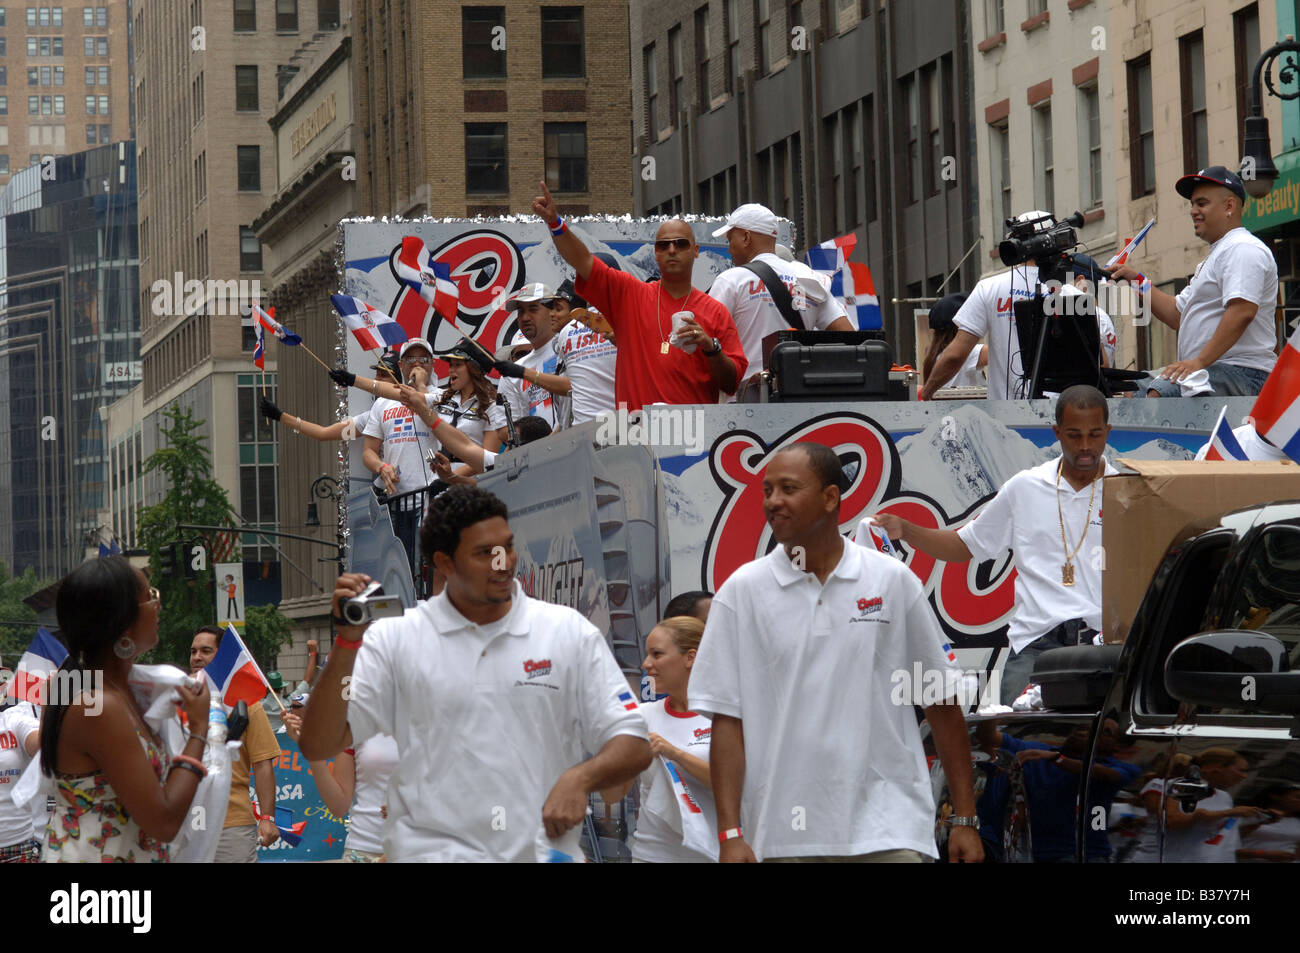 Coors Brauerei Schwimmer in der jährlichen Dominikanische Independence Day Parade in New York City auf der Sixth Avenue am 10. August 2008 Stockfoto